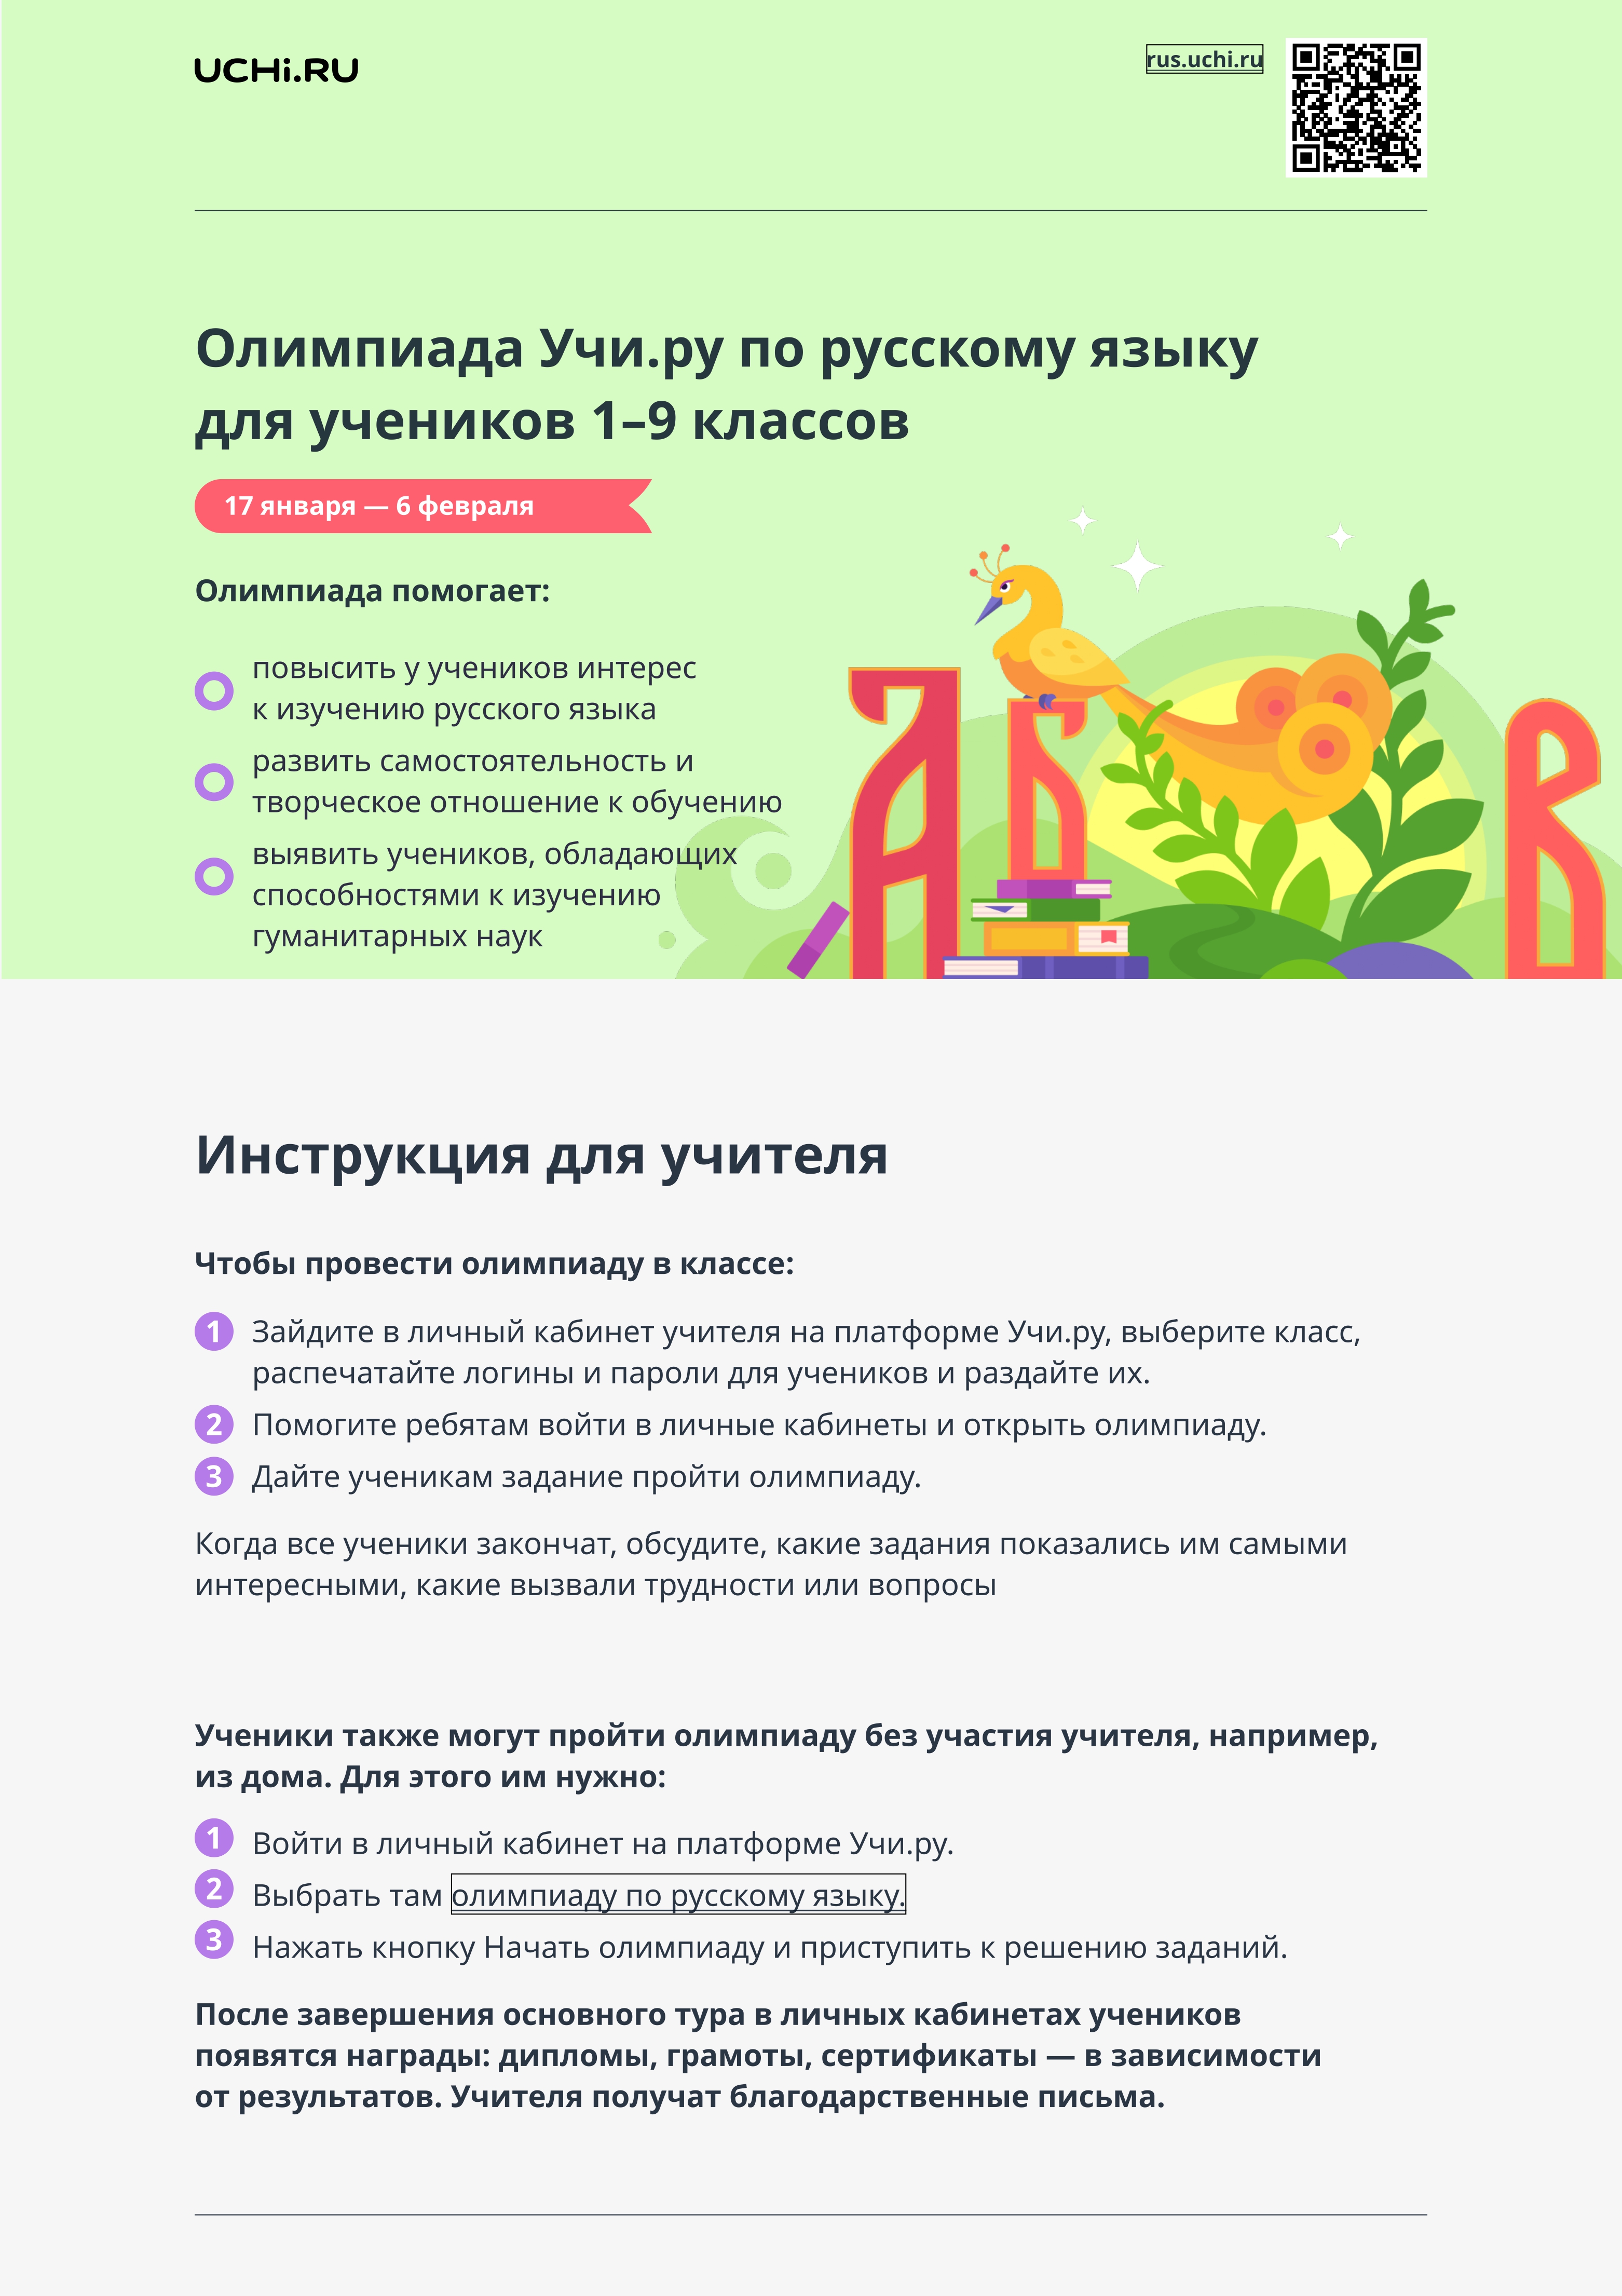 Инструкция по участию во Всероссийской онлайн-олимпиаде по русскому языку.